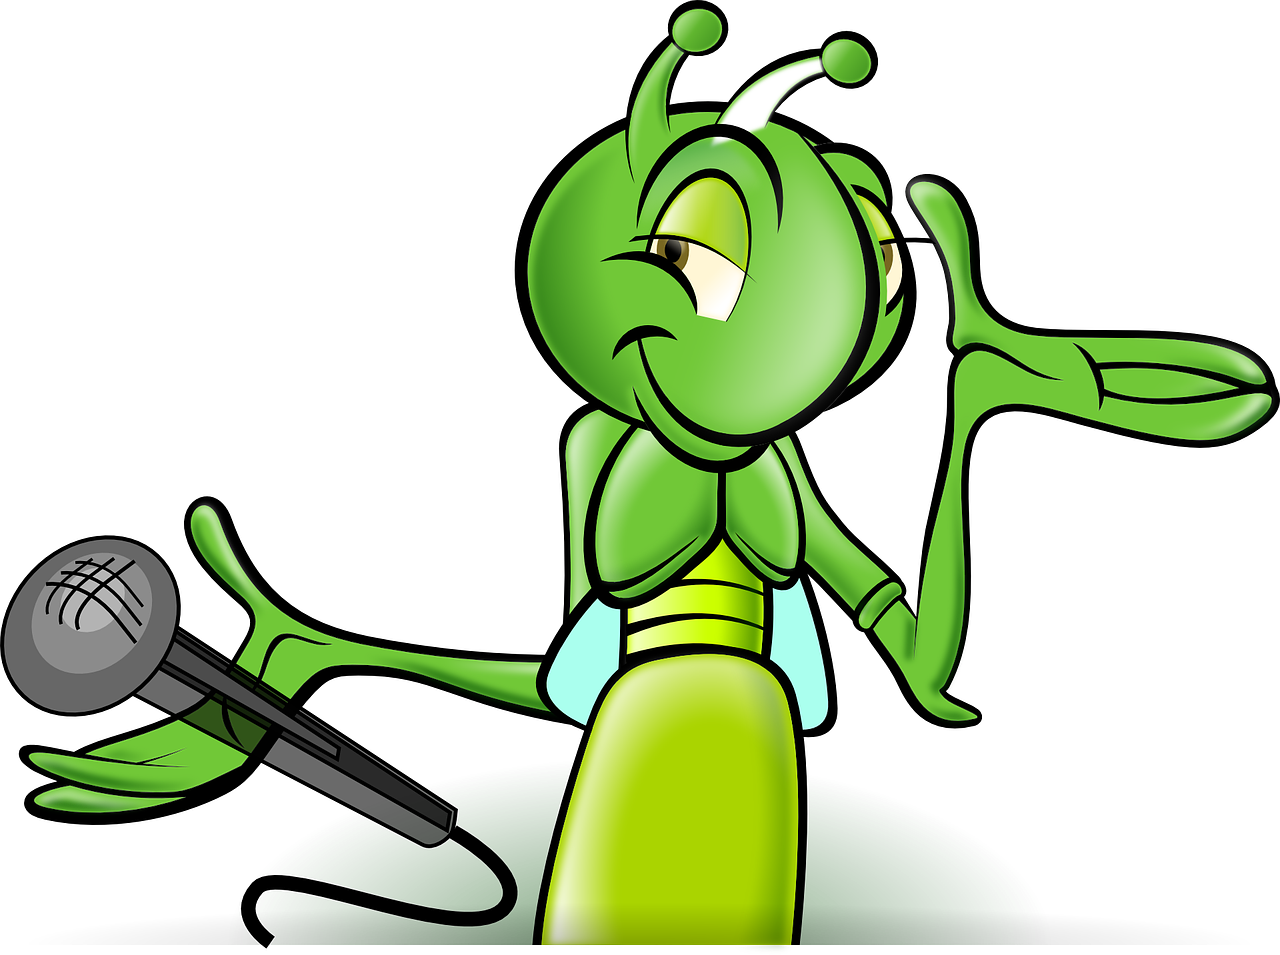 Grafik: Illustration einer grünen Ameise mit Mikrofon in der Hand